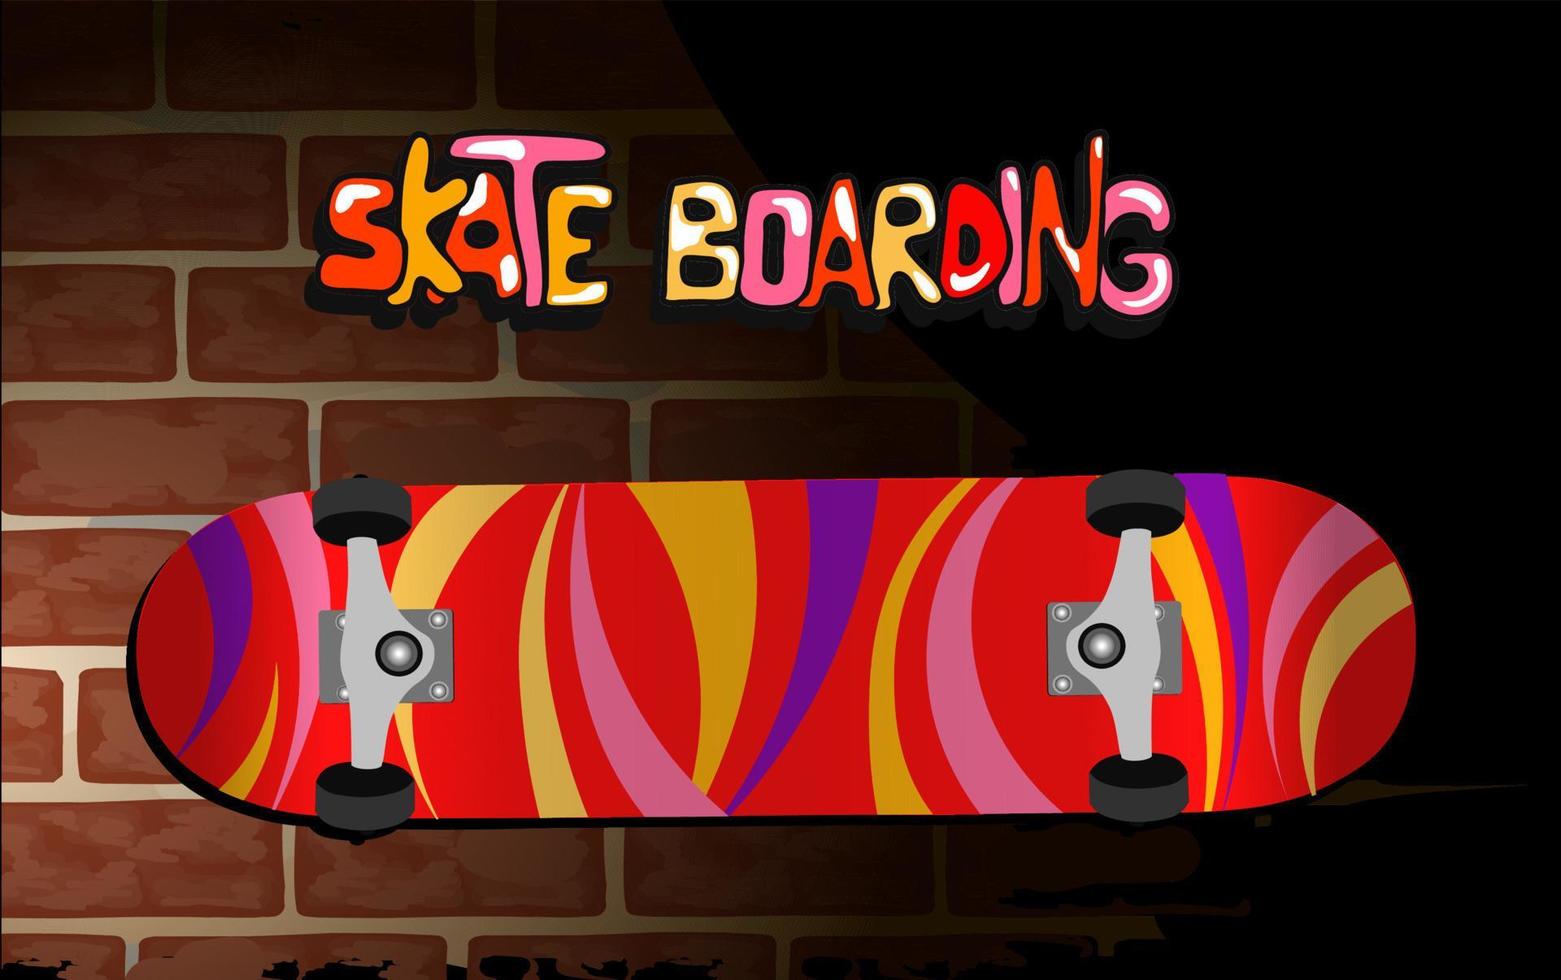 Go skateboarding day. Lettering. Poster design illustration.Funny skateboard. Skate park logo. Vector illustration.